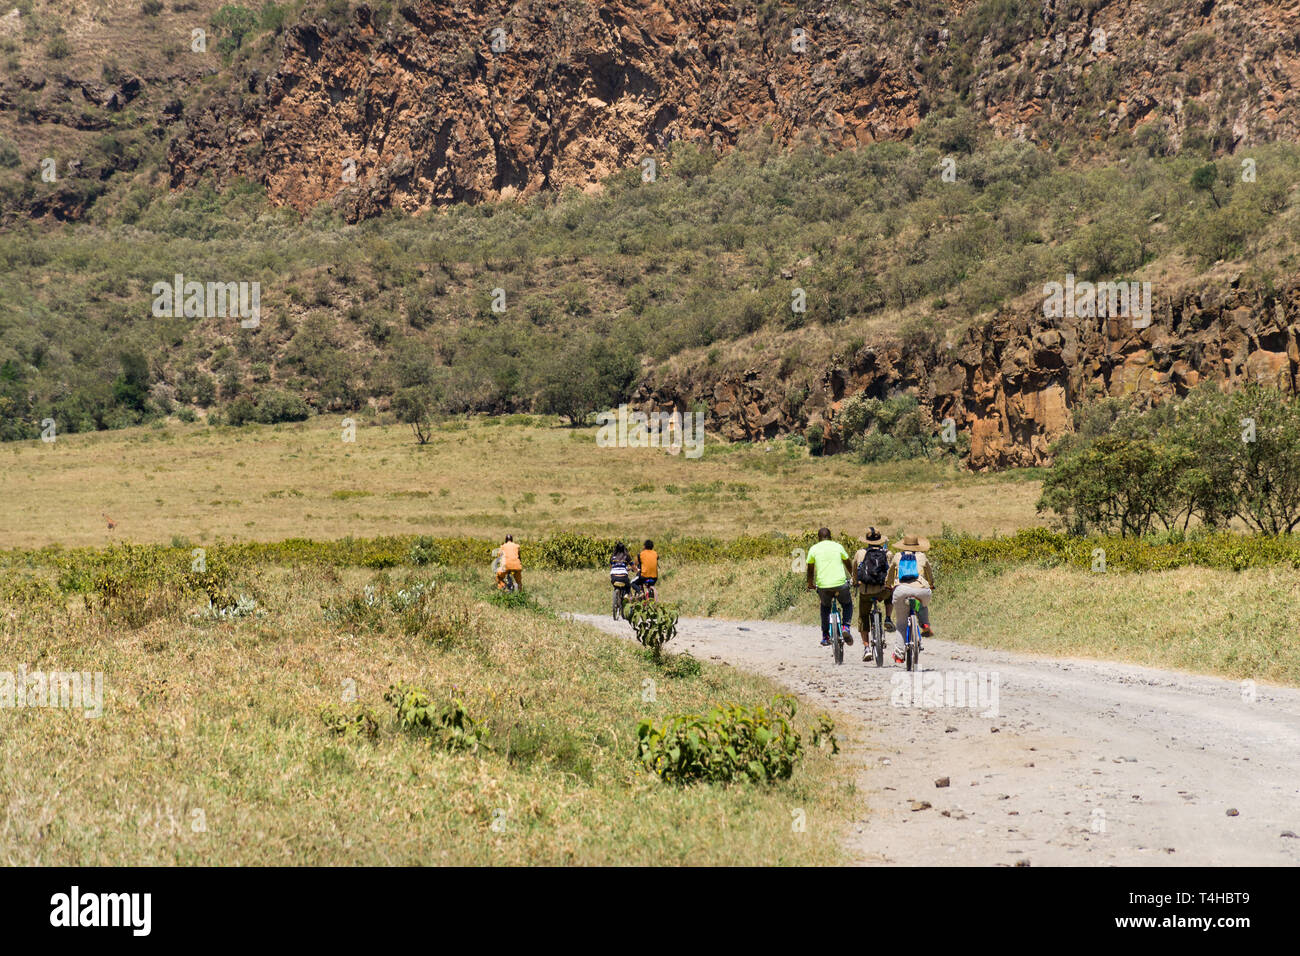 Les touristes avec la bicyclette guide sur une route poussiéreuse, Hells Gate National Park, Kenya Banque D'Images